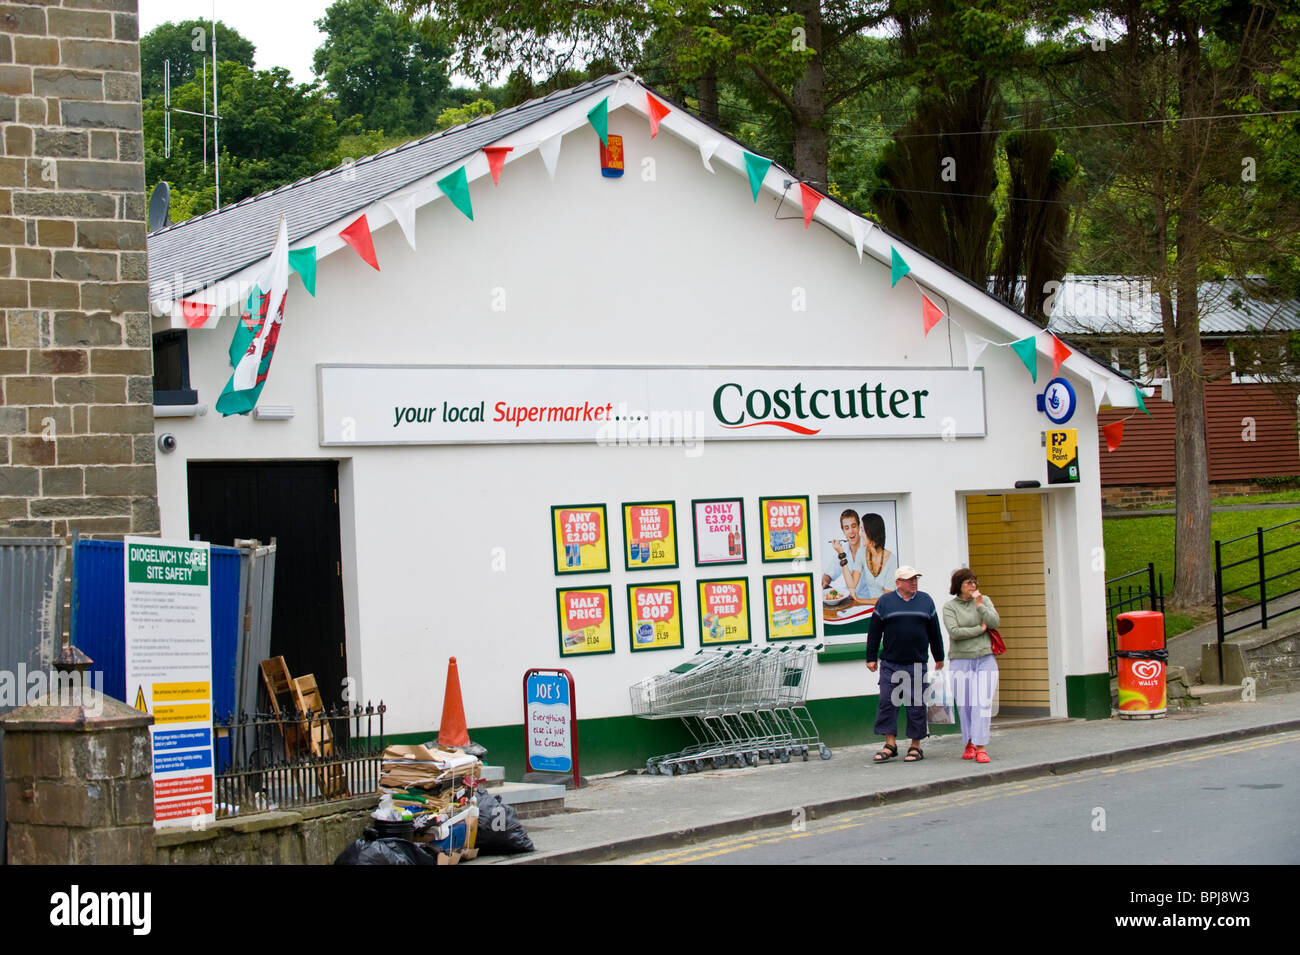 L'extérieur du supermarché Costcutter dans la maison de ville balnéaire de New Quay West Wales Royaume-uni Ceredigion Banque D'Images